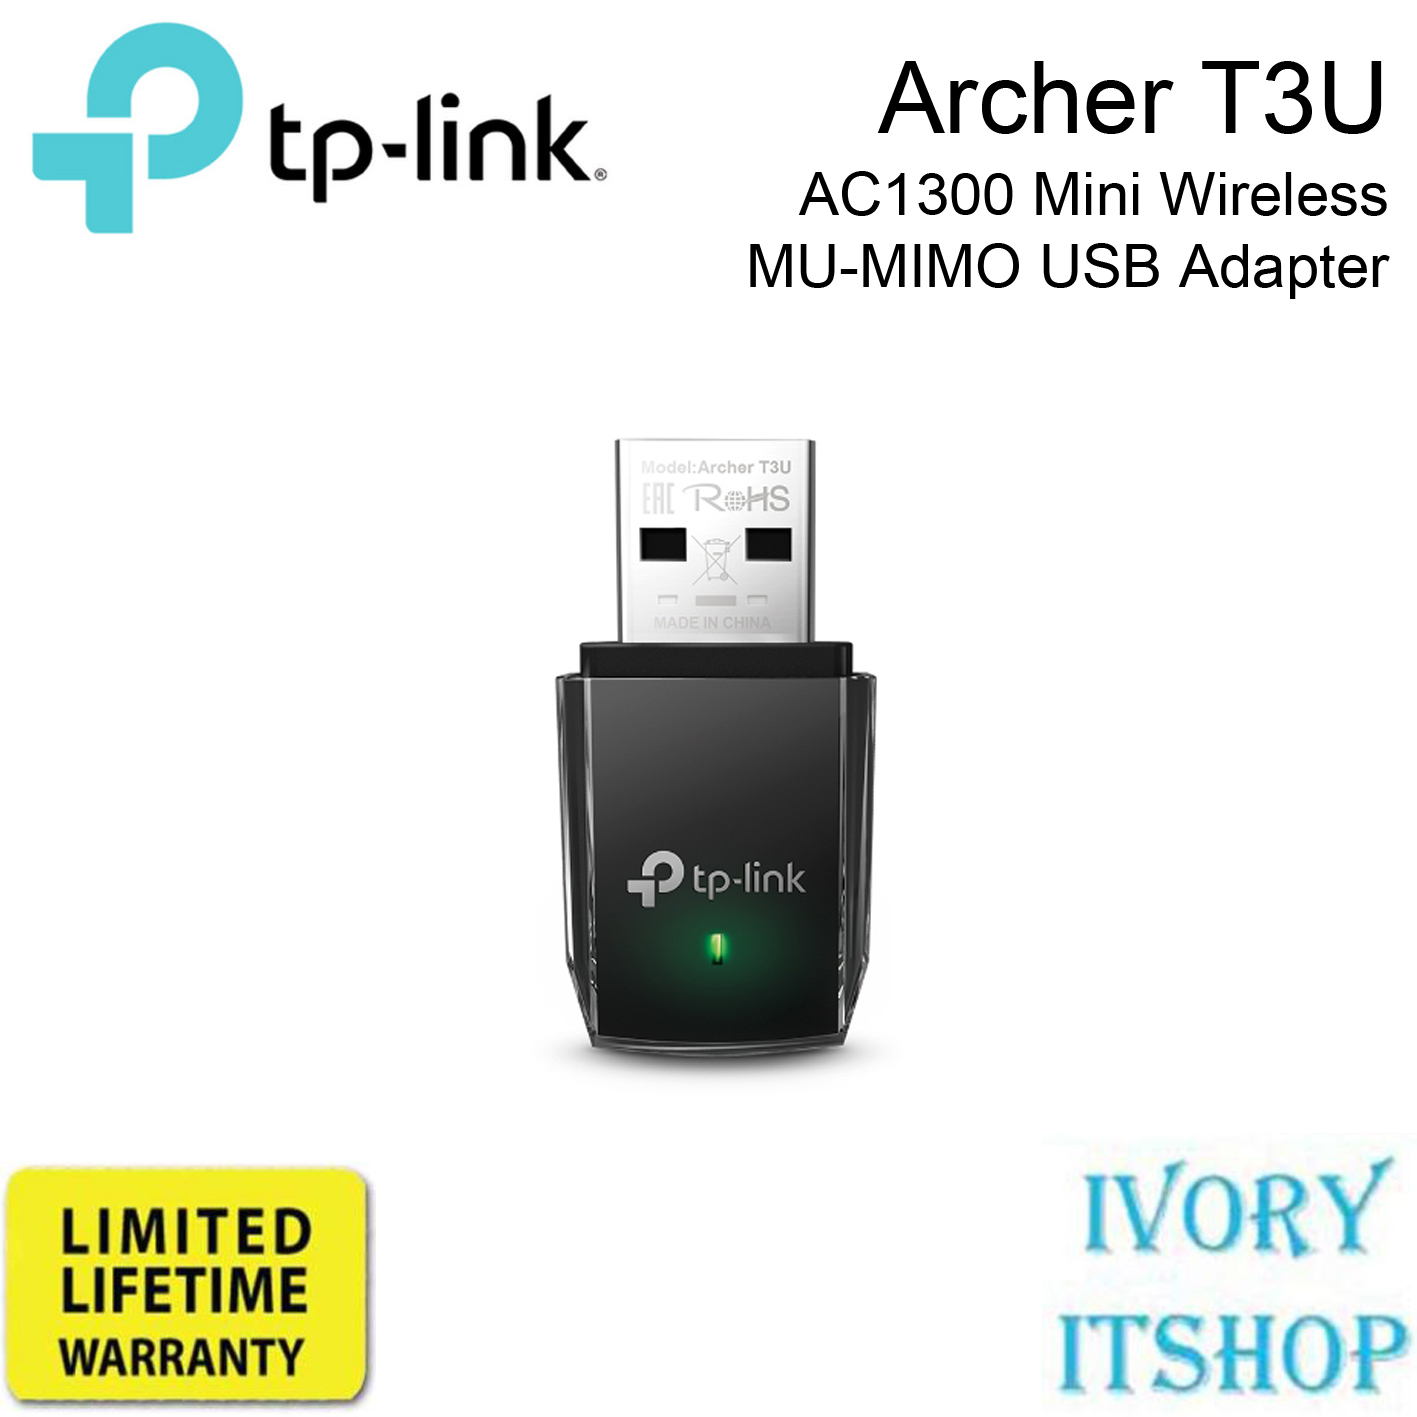 TP-Link Archer T3U AC1300 Mini Wireless MU-MIMO USB Adapter